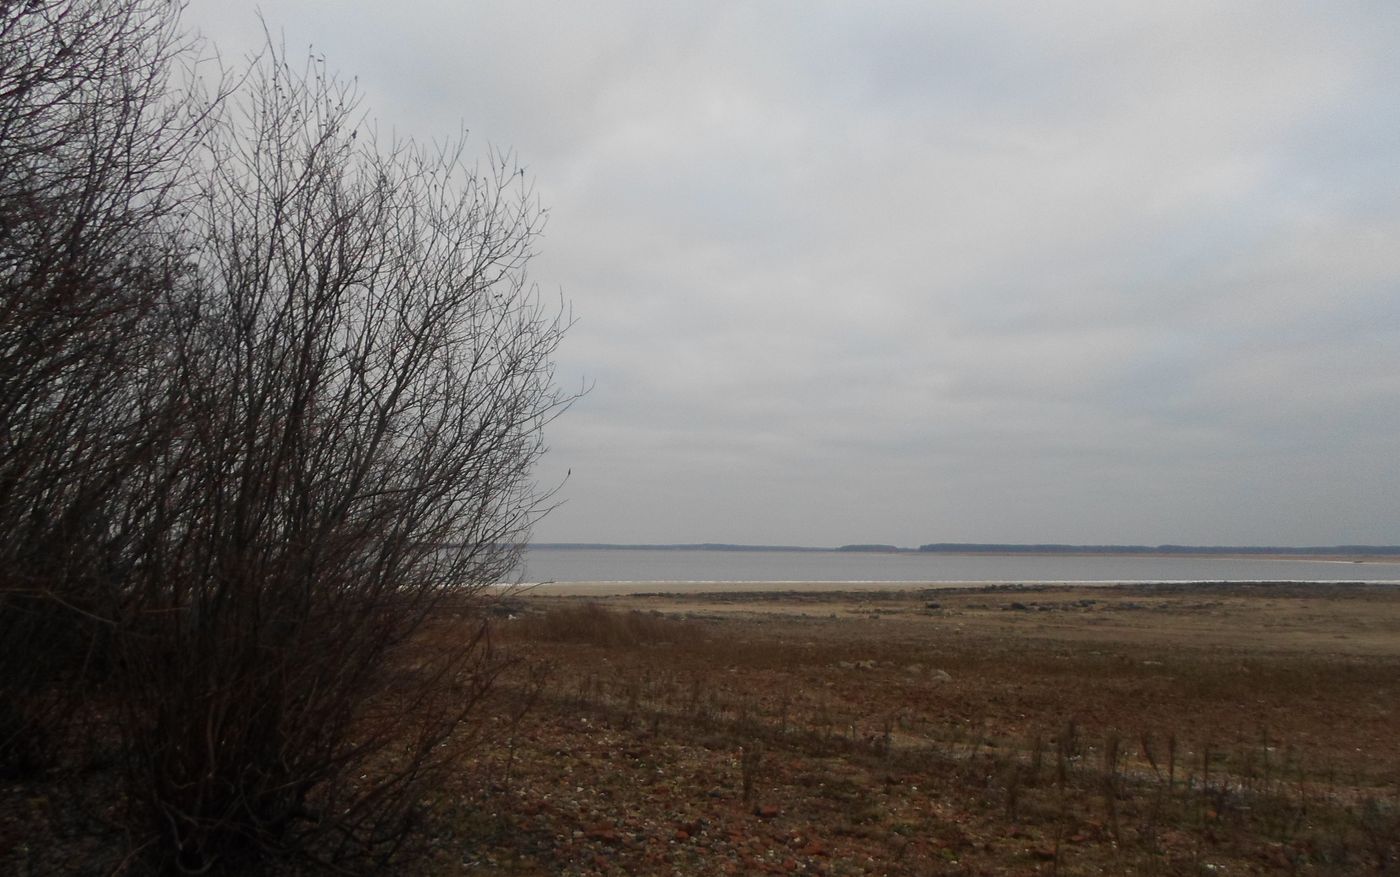 Остров Егорушкин и берег рядом, изображение ландшафта.